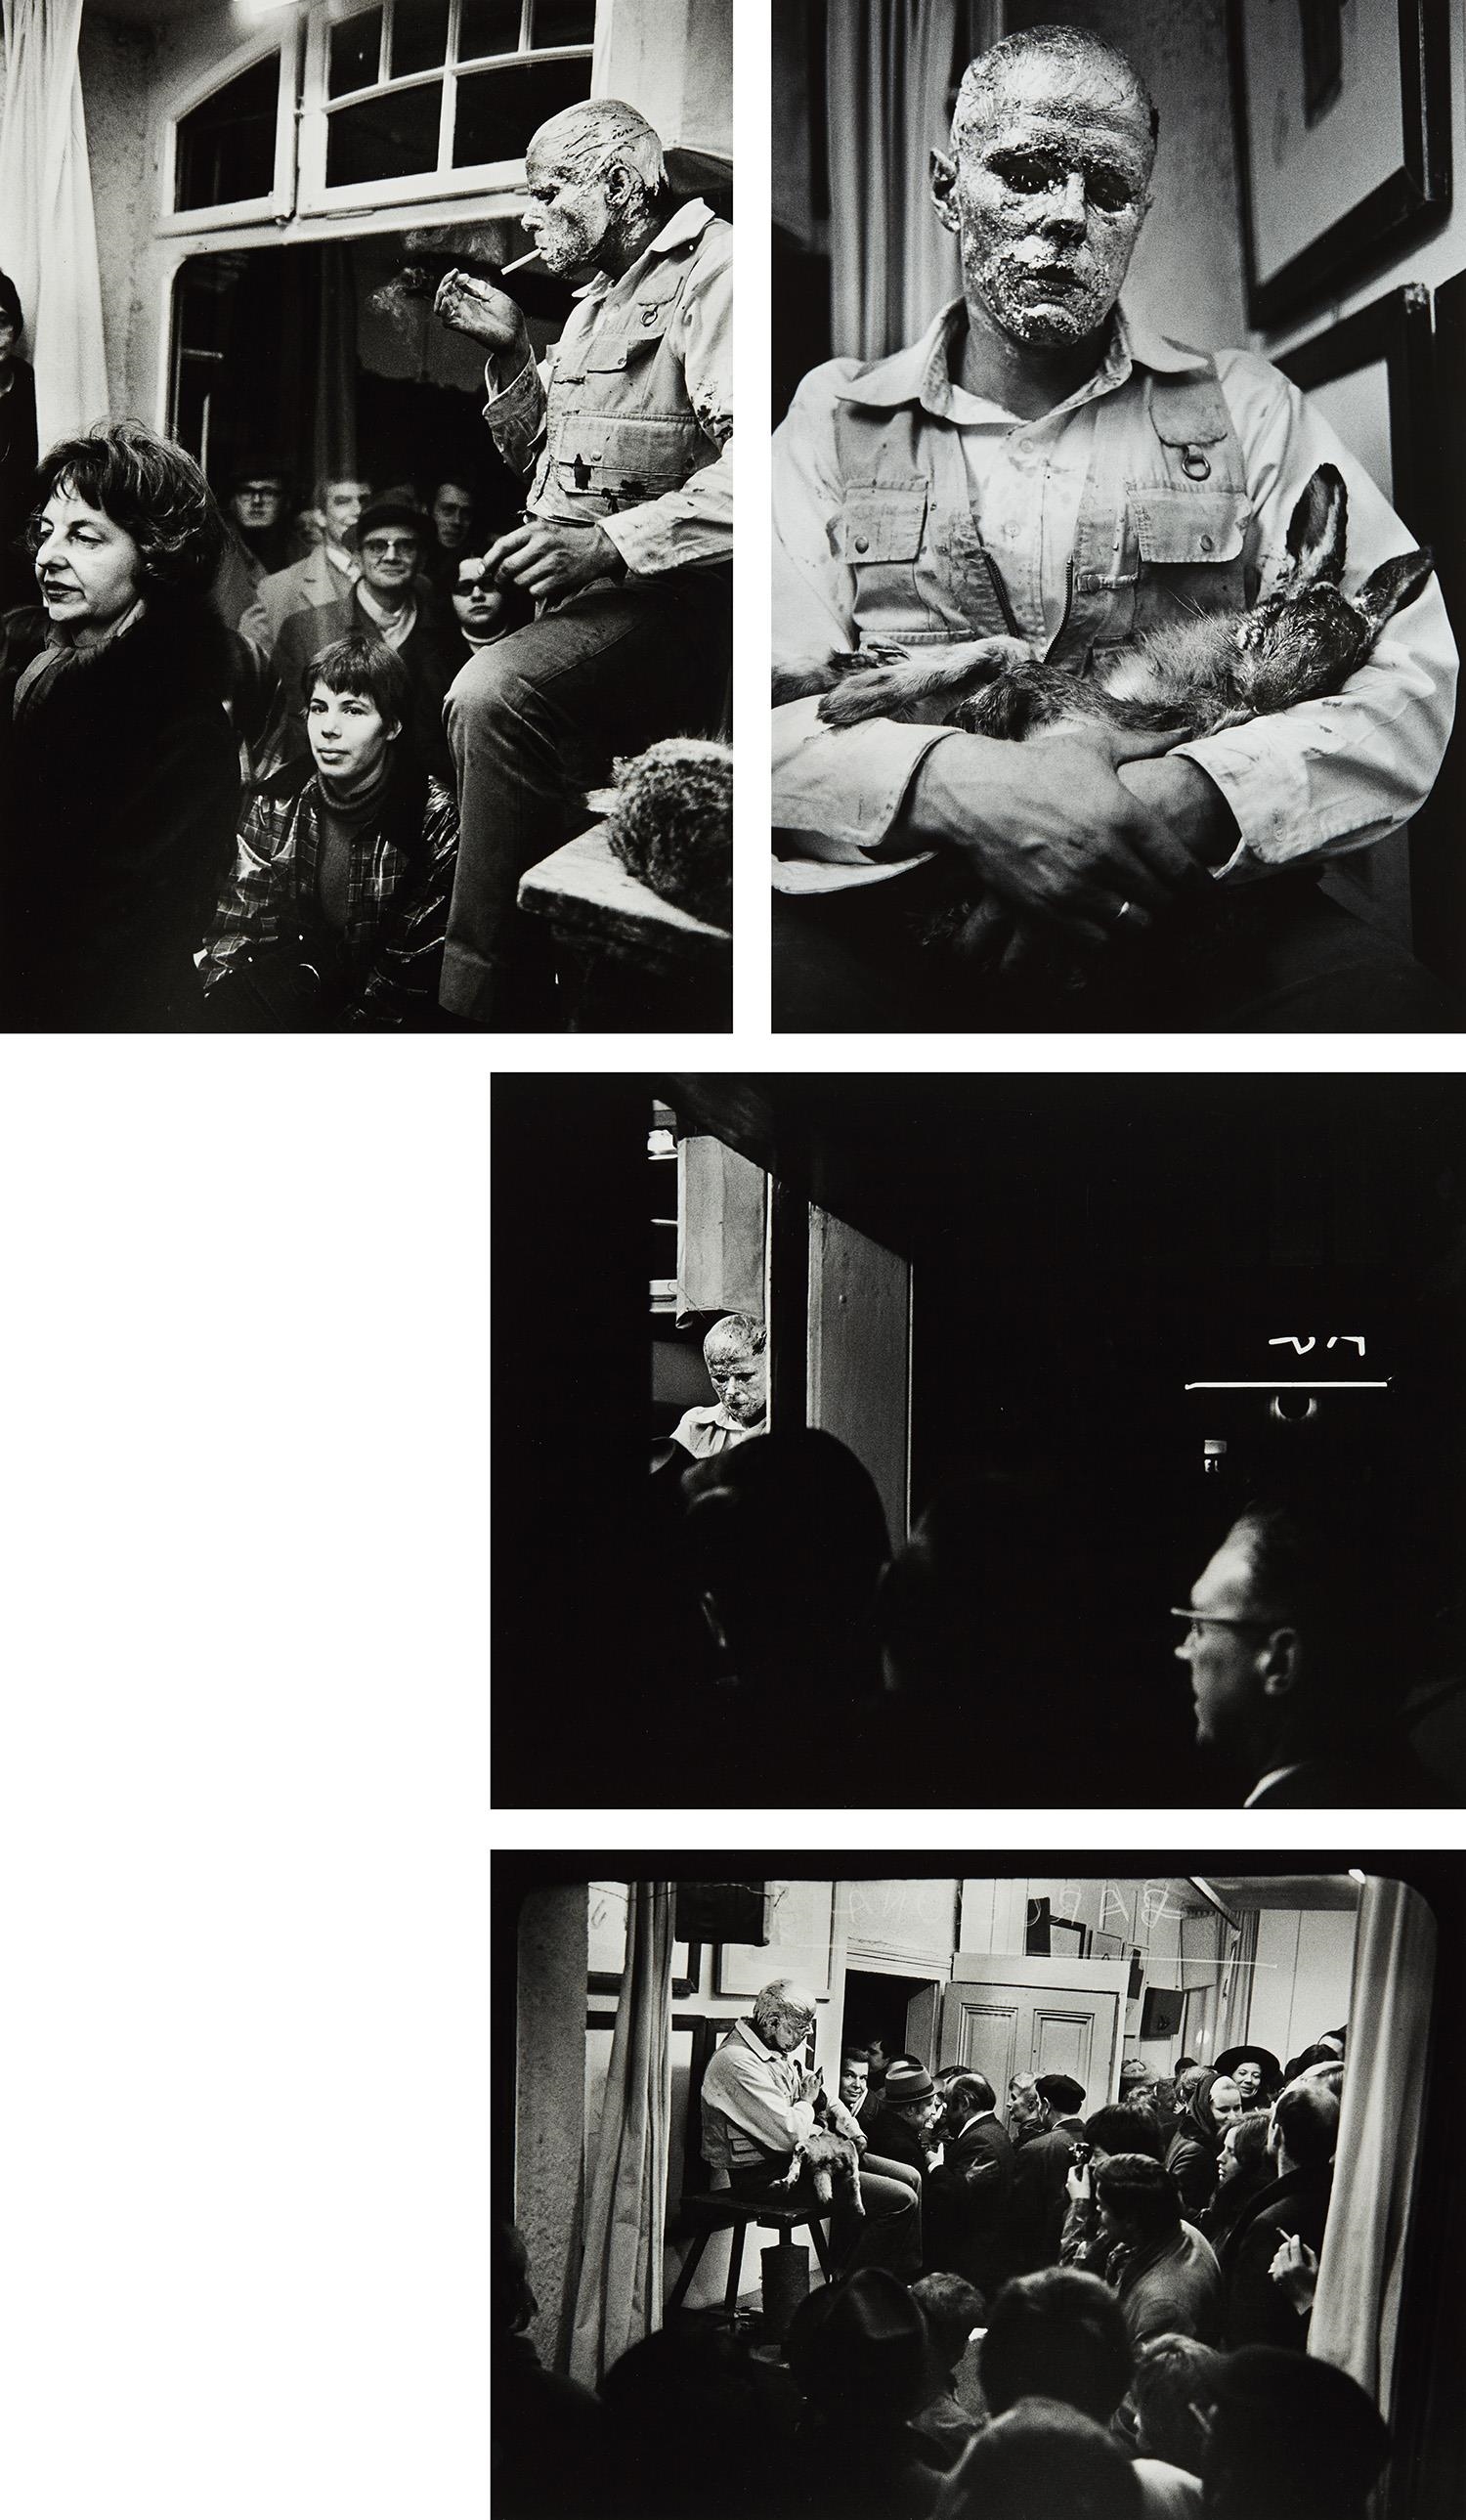 30+ Wie man dem toten hasen die bilder erklaert , Walter Vogel Joseph Beuys from his performance Die Aktion Wie man dem